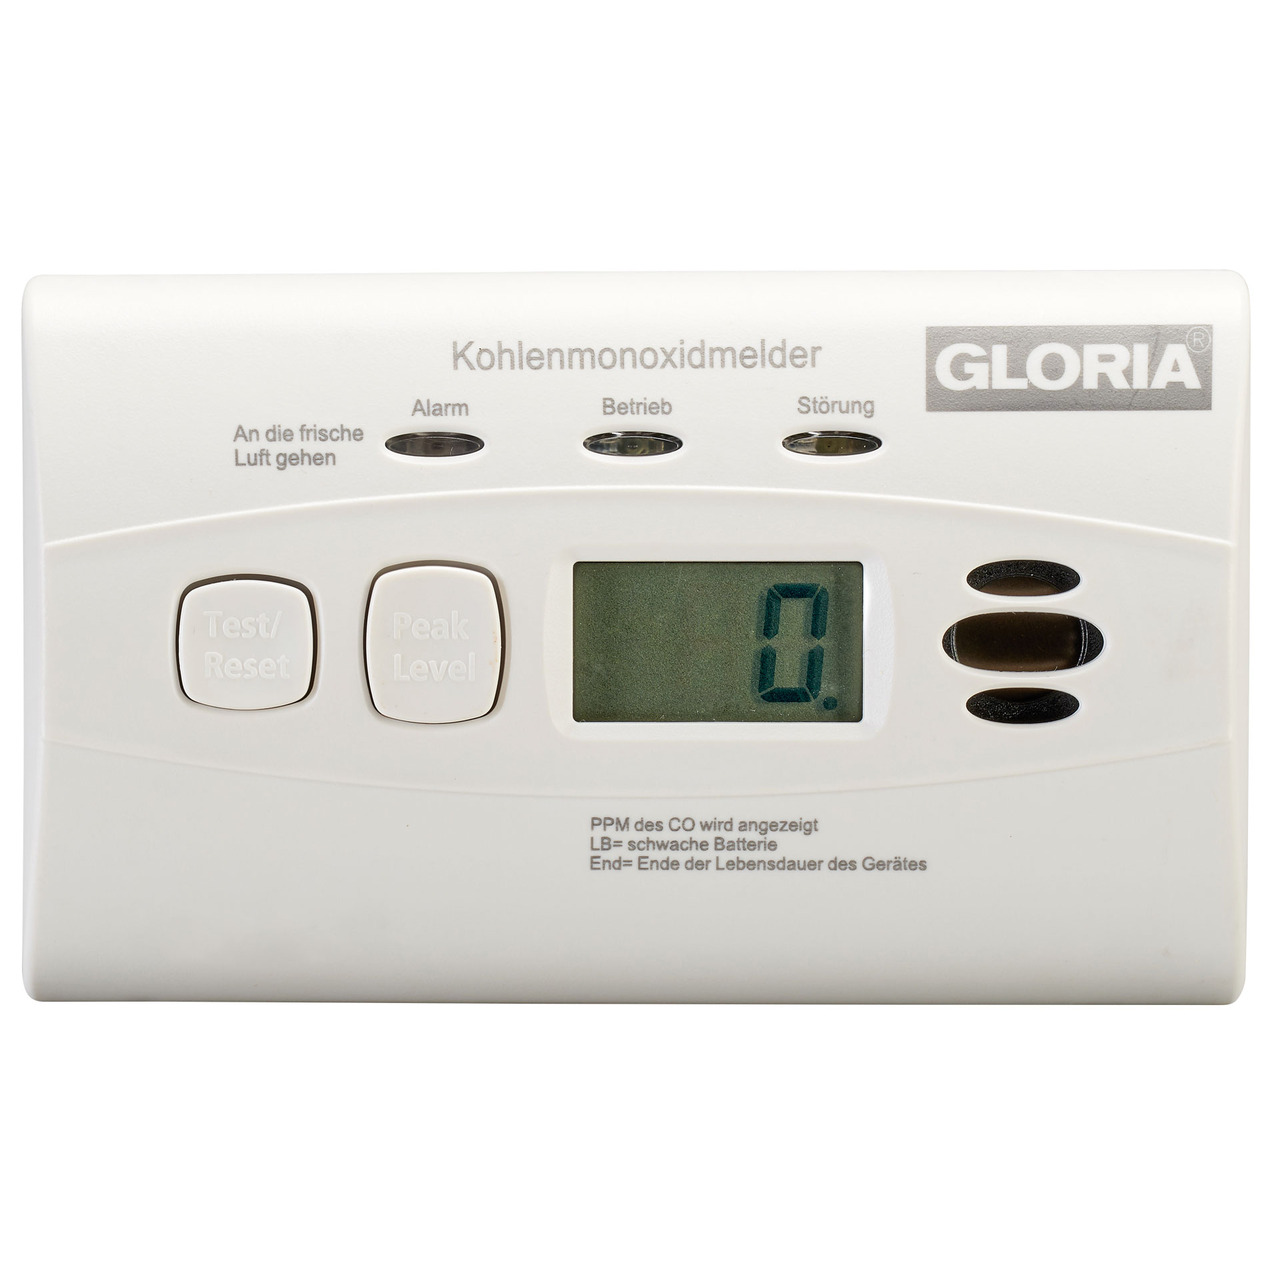 GLORIA Kohlenmonoxid-Warnmelder - CO-Melder K10D- mit Display und 10-Jahres-Batterie unter Sicherheitstechnik